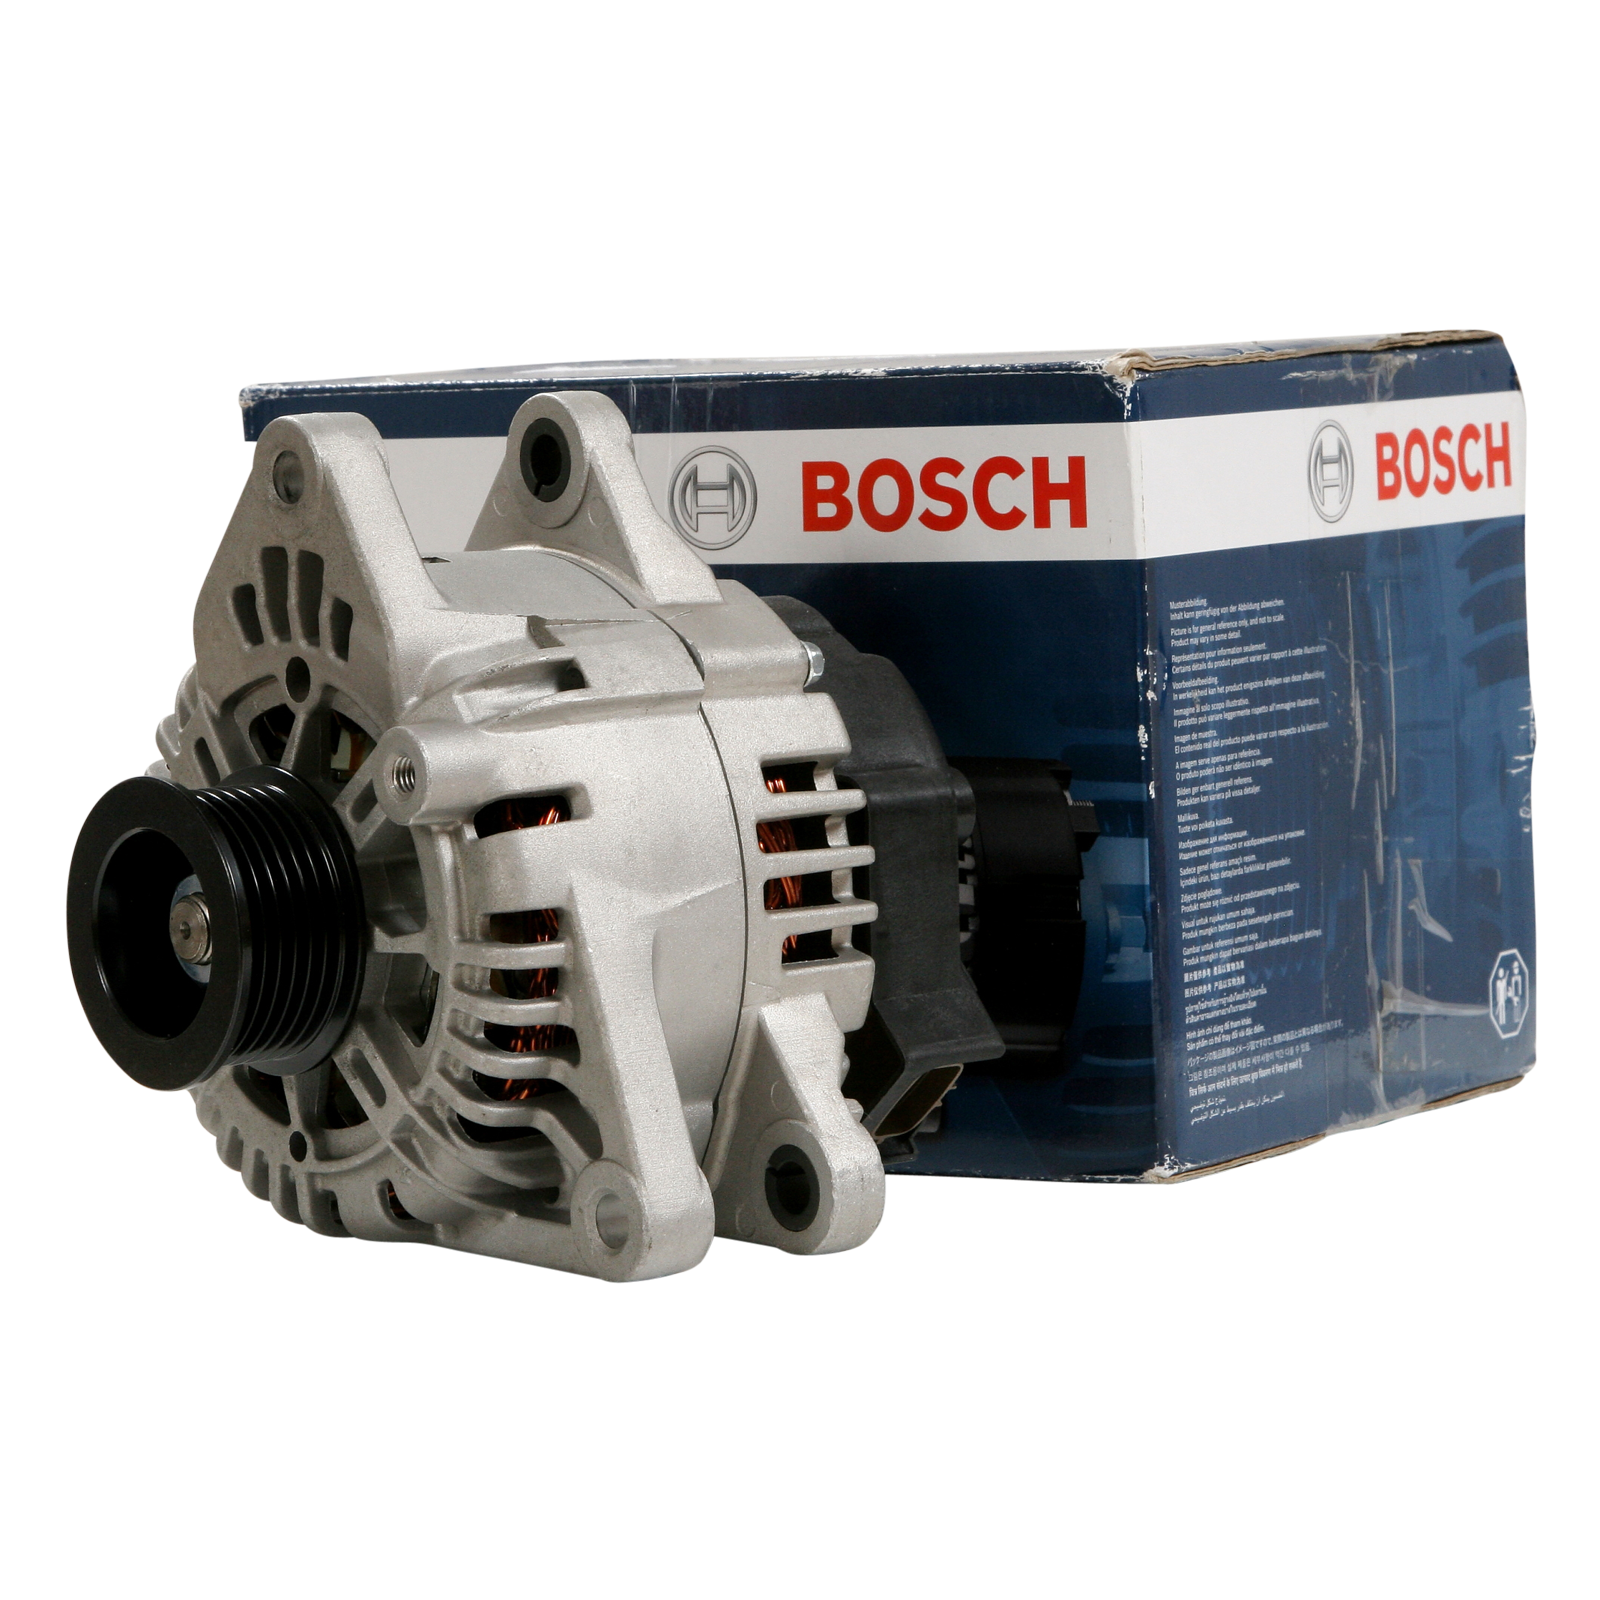 Genuine Bosch Alternator for Hyundai Grandeur XG 3.0L Petrol G6CT 01/99 - 12/02